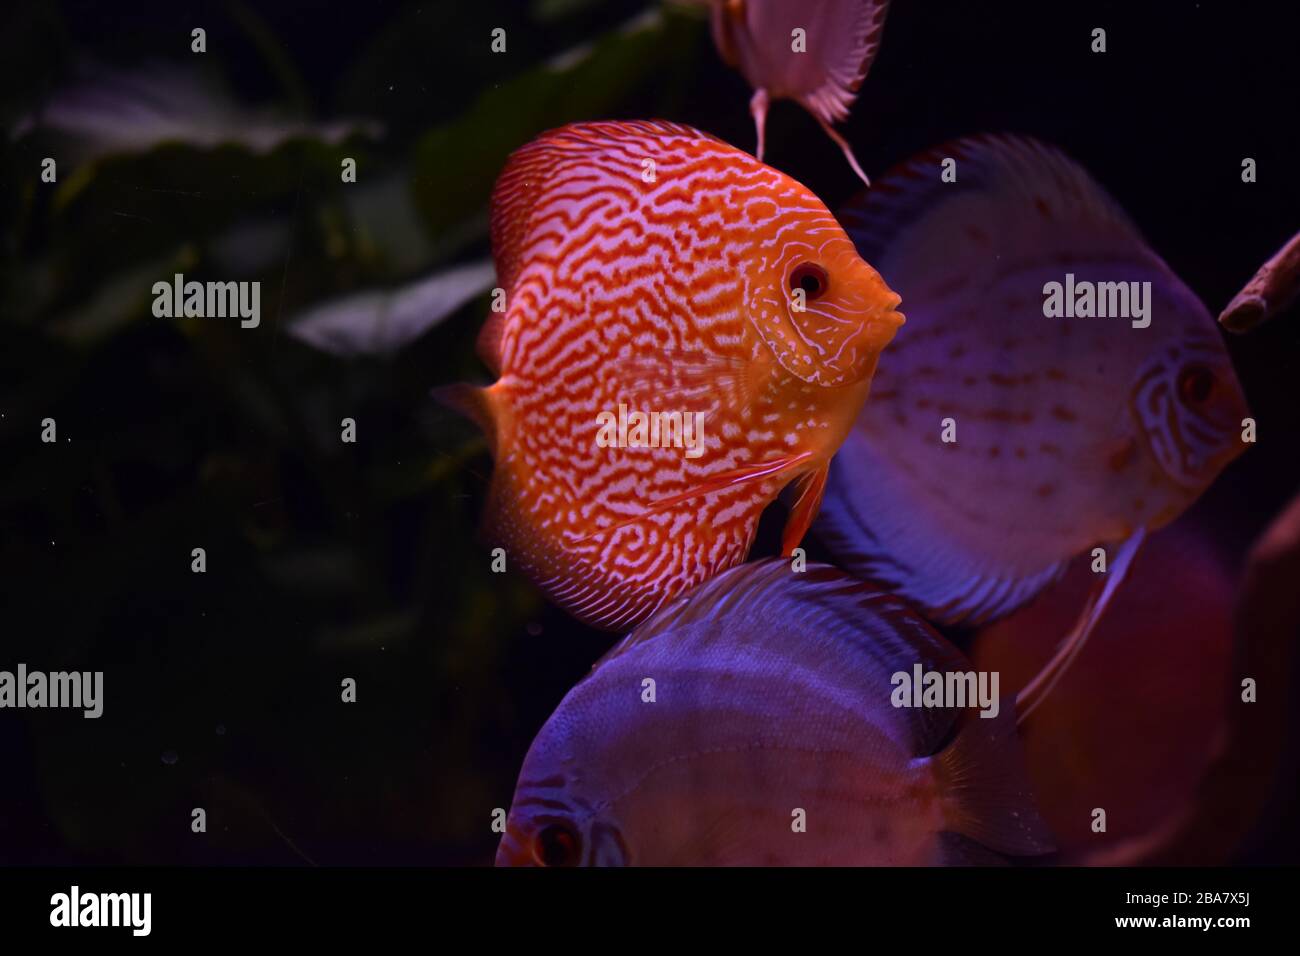 group of discus fish in aquarium, multi-colored tropical fish